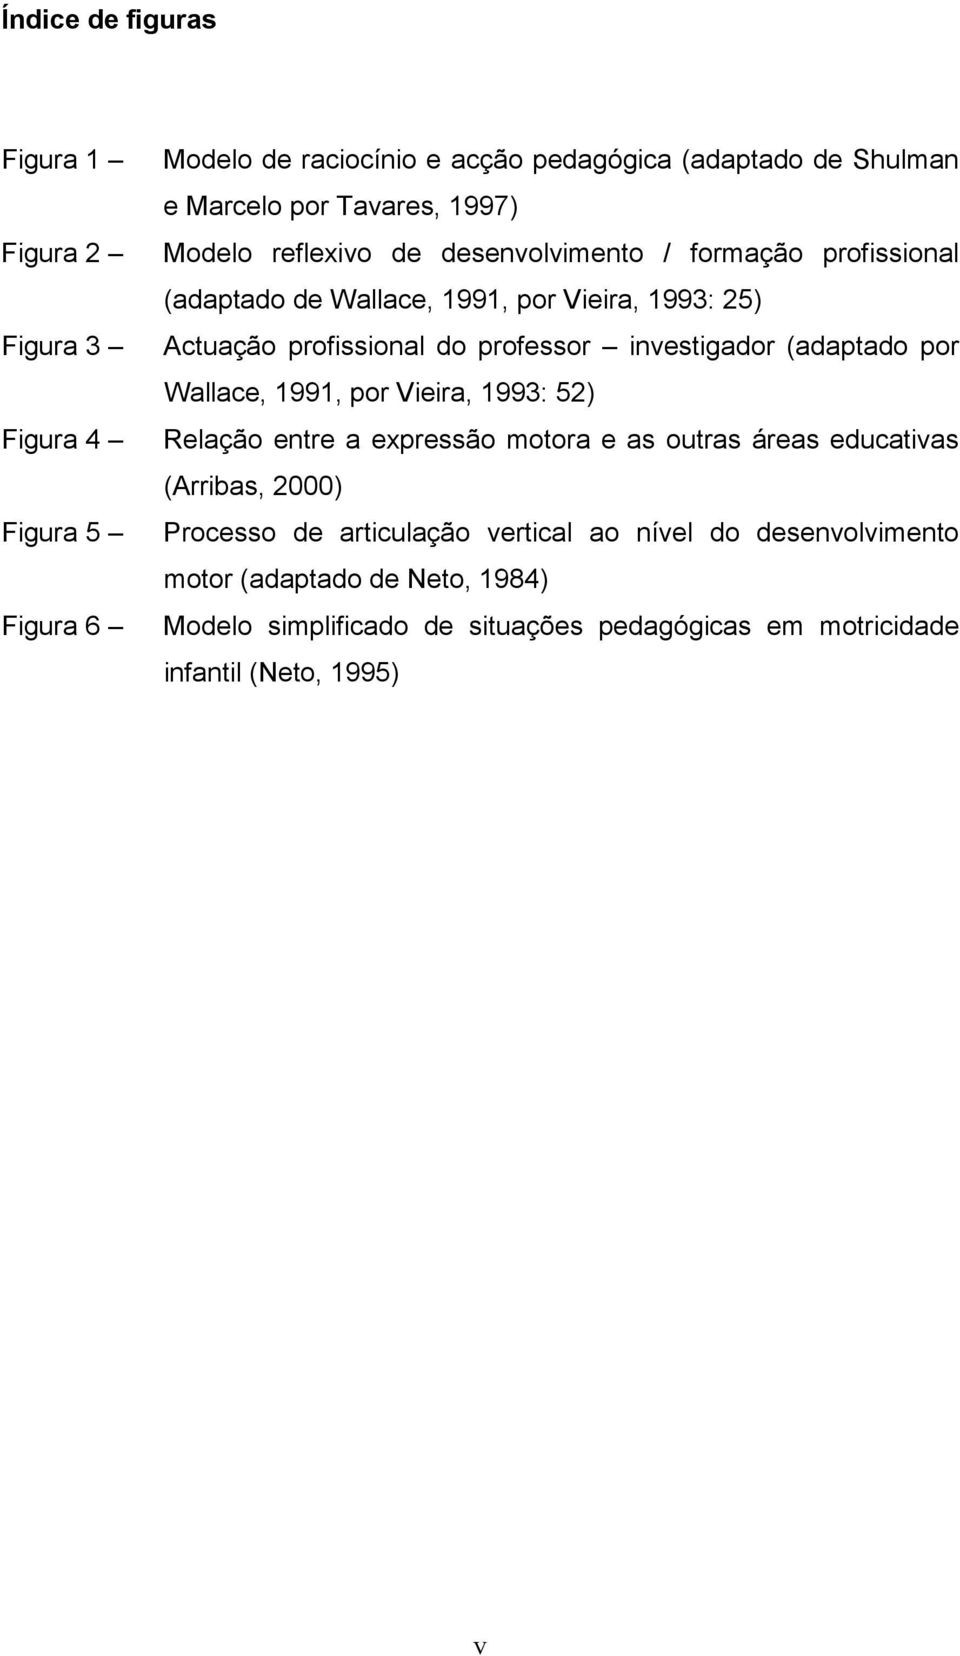 investigador (adaptado por Wallace, 1991, por Vieira, 1993: 52) Relação entre a expressão motora e as outras áreas educativas (Arribas, 2000) Processo de